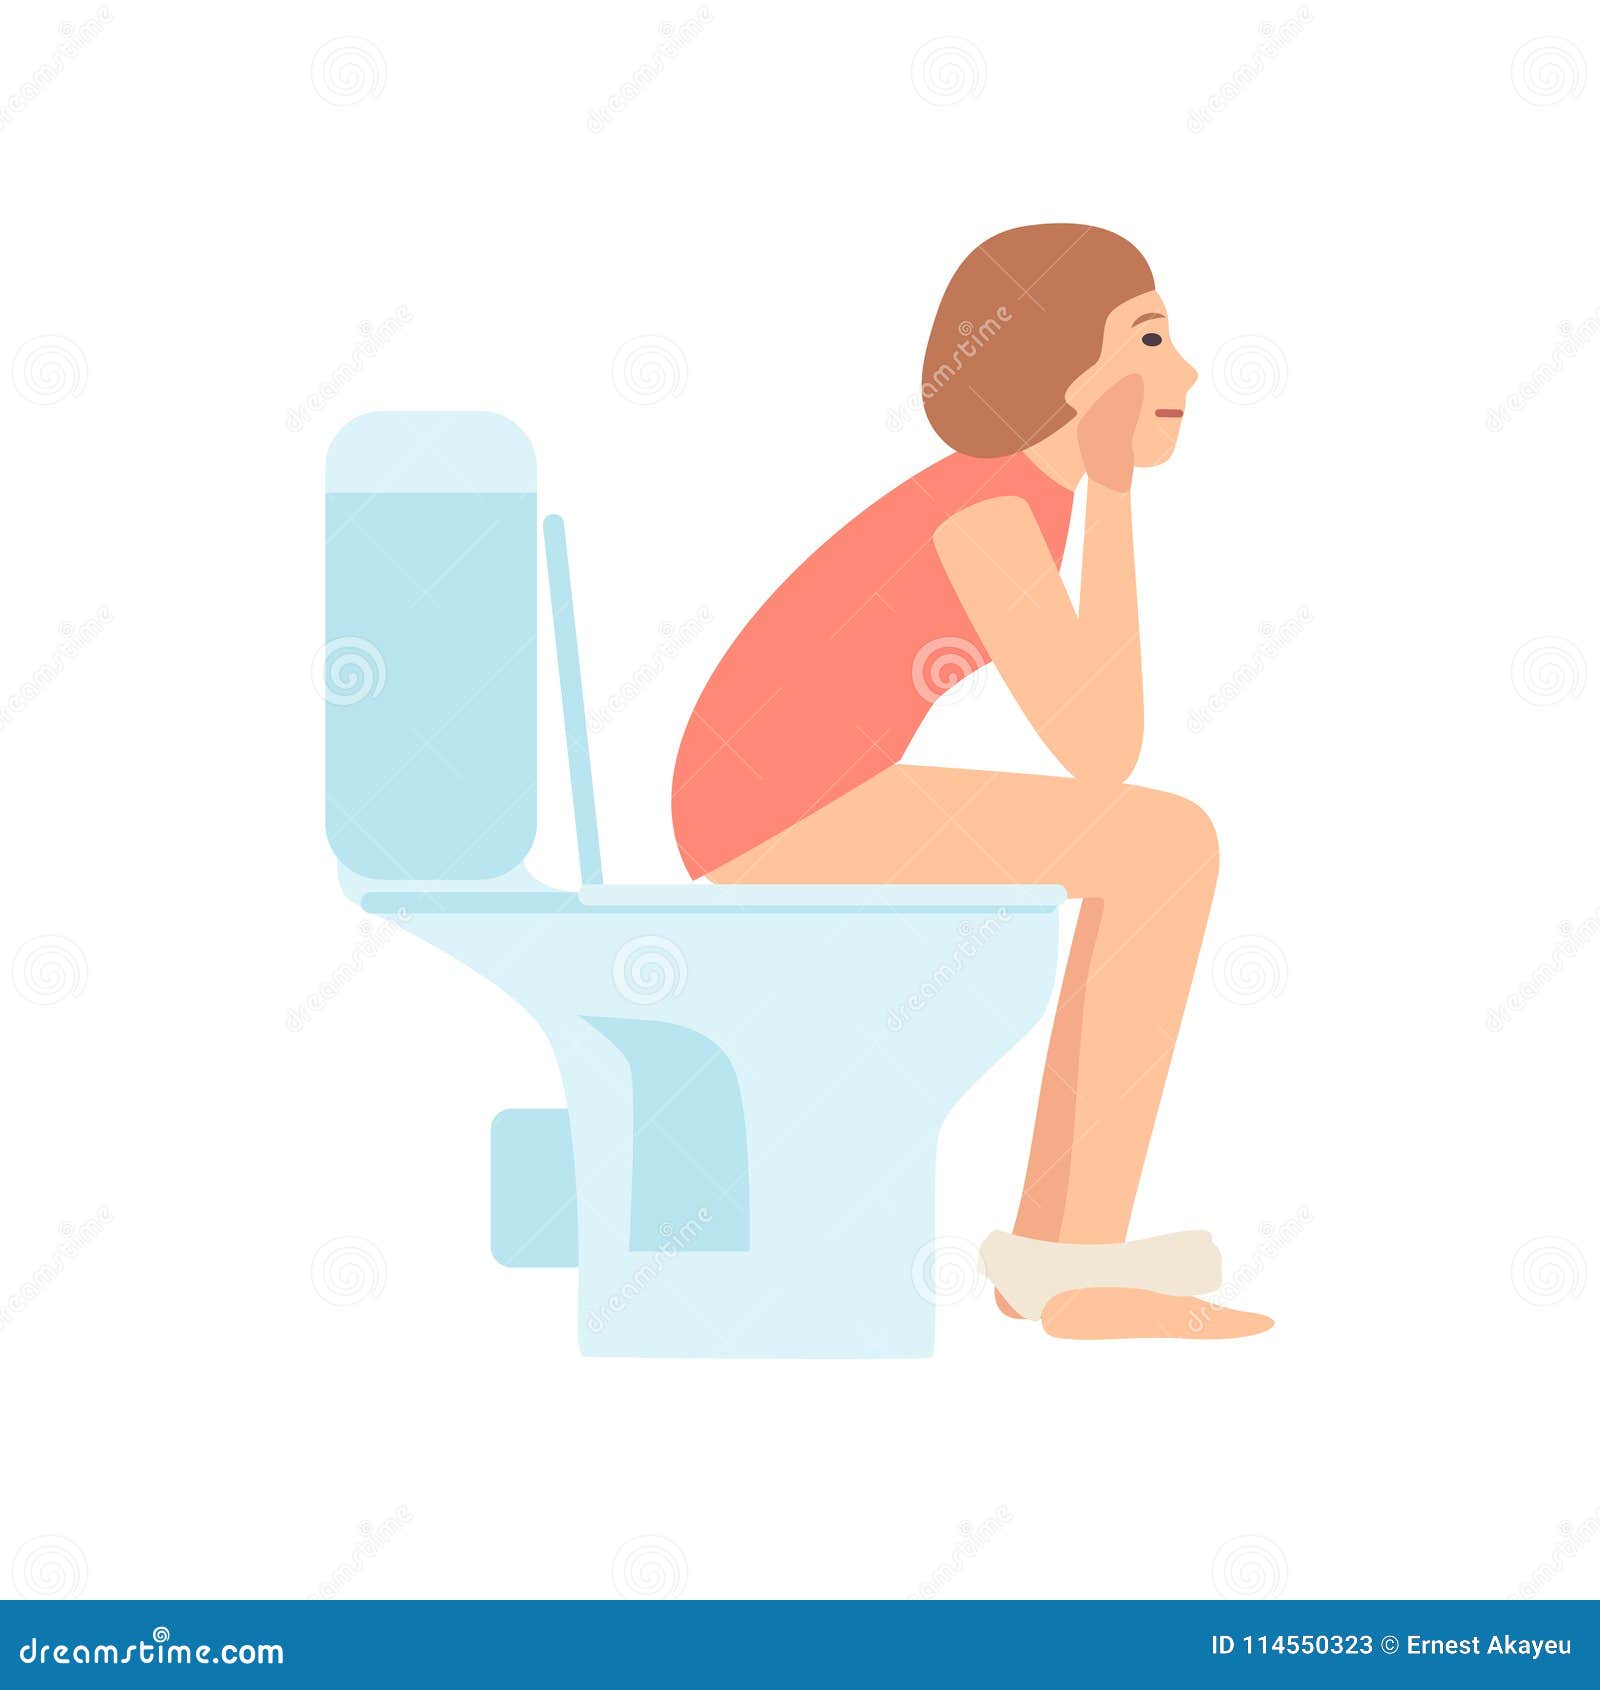 Ladies shitting Pooping During